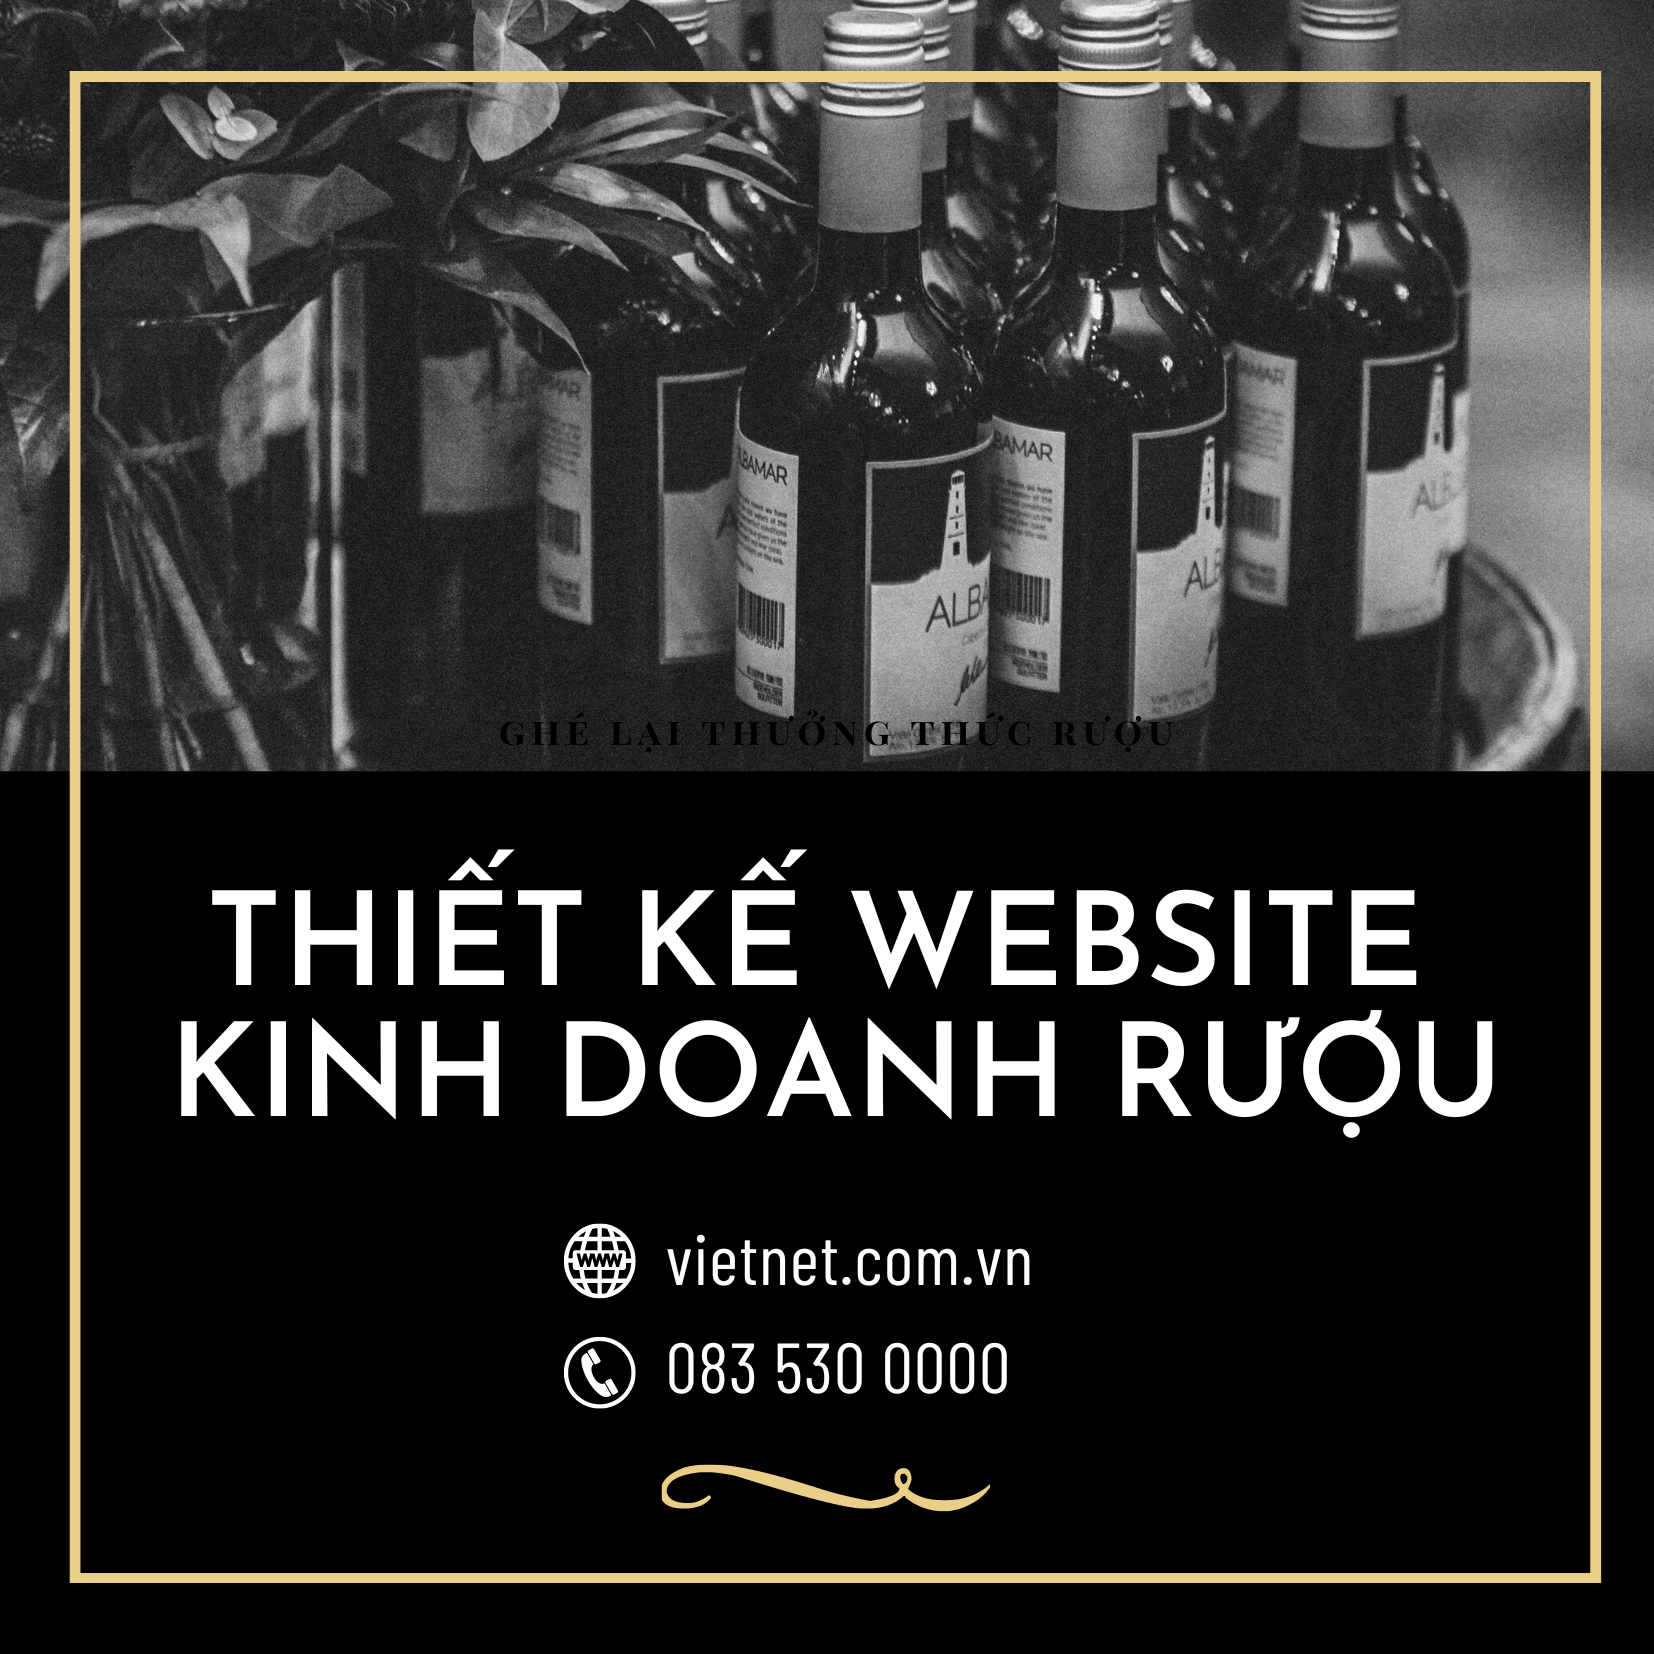 Thiết kế website kinh doanh rượu